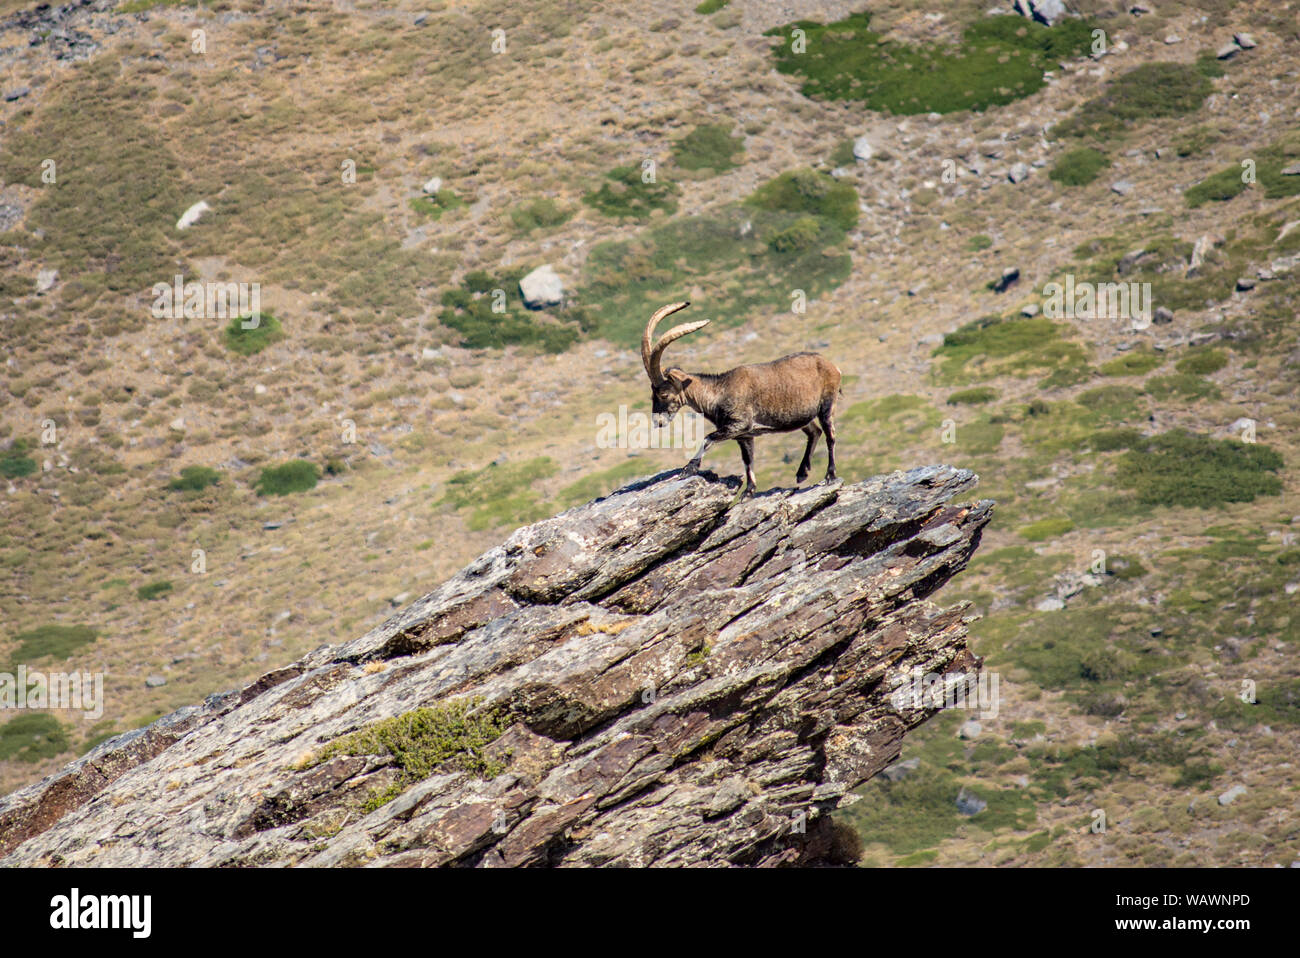 Ibex Espagnol Espagnol, chèvre sauvage, ou chèvre sauvage ibérique (Capra pyrenaica), sur la pointe d'un rocher. La Sierra Nevada, Granada, Espagne. Banque D'Images